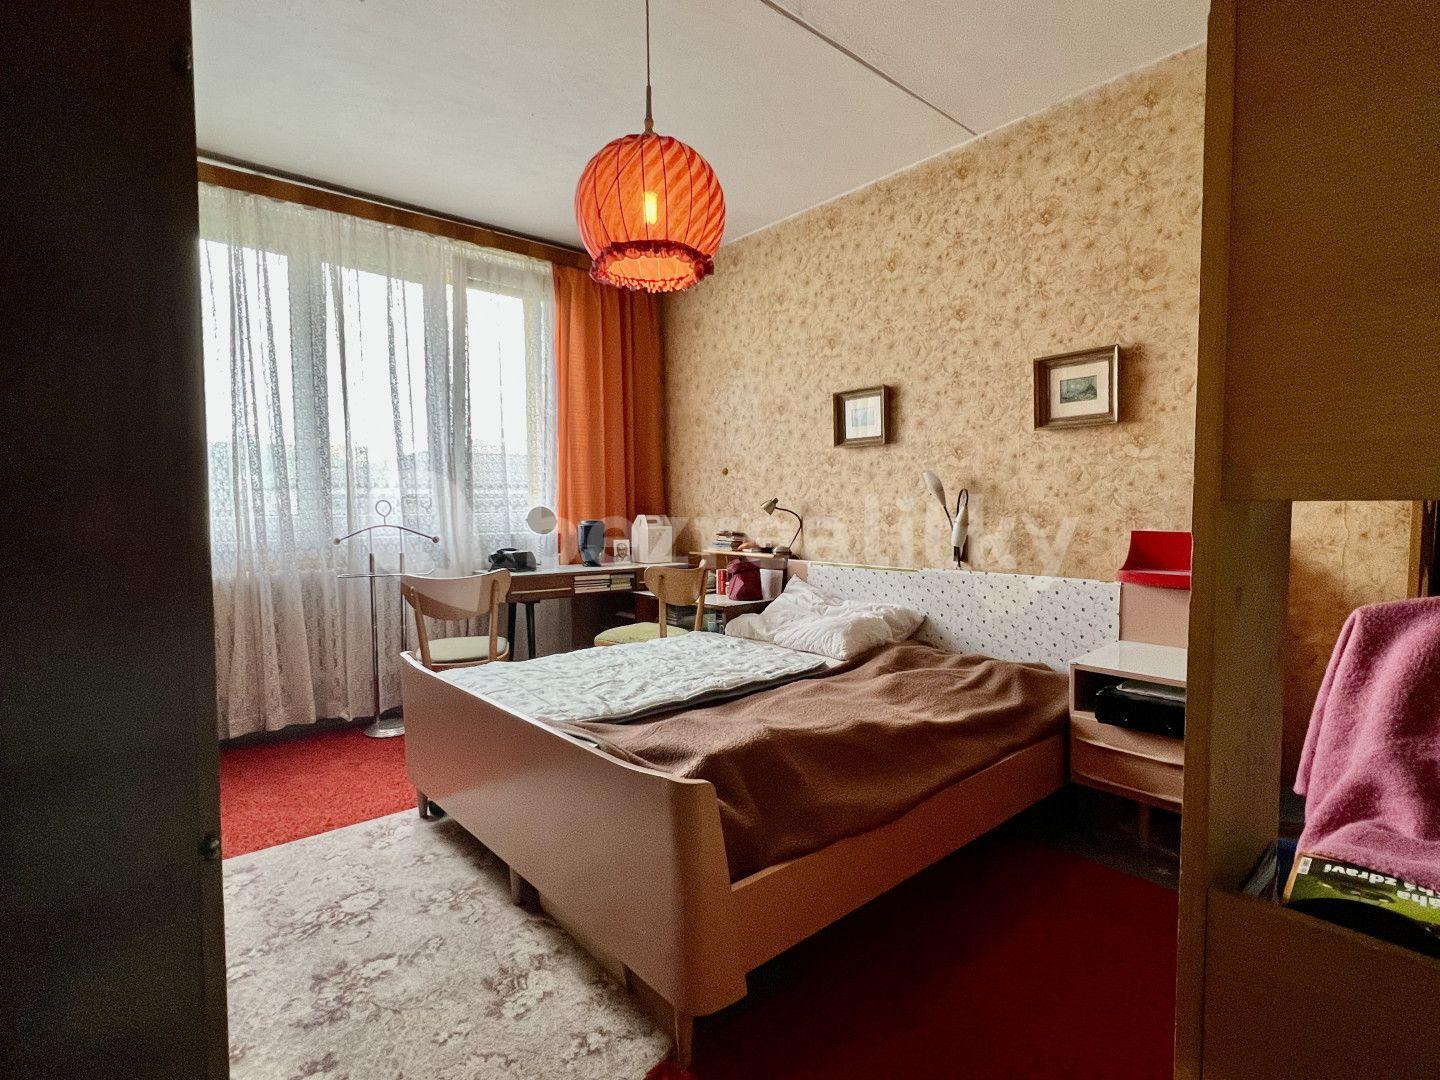 3 bedroom flat for sale, 69 m², Uhlířská, Bruntál, Moravskoslezský Region